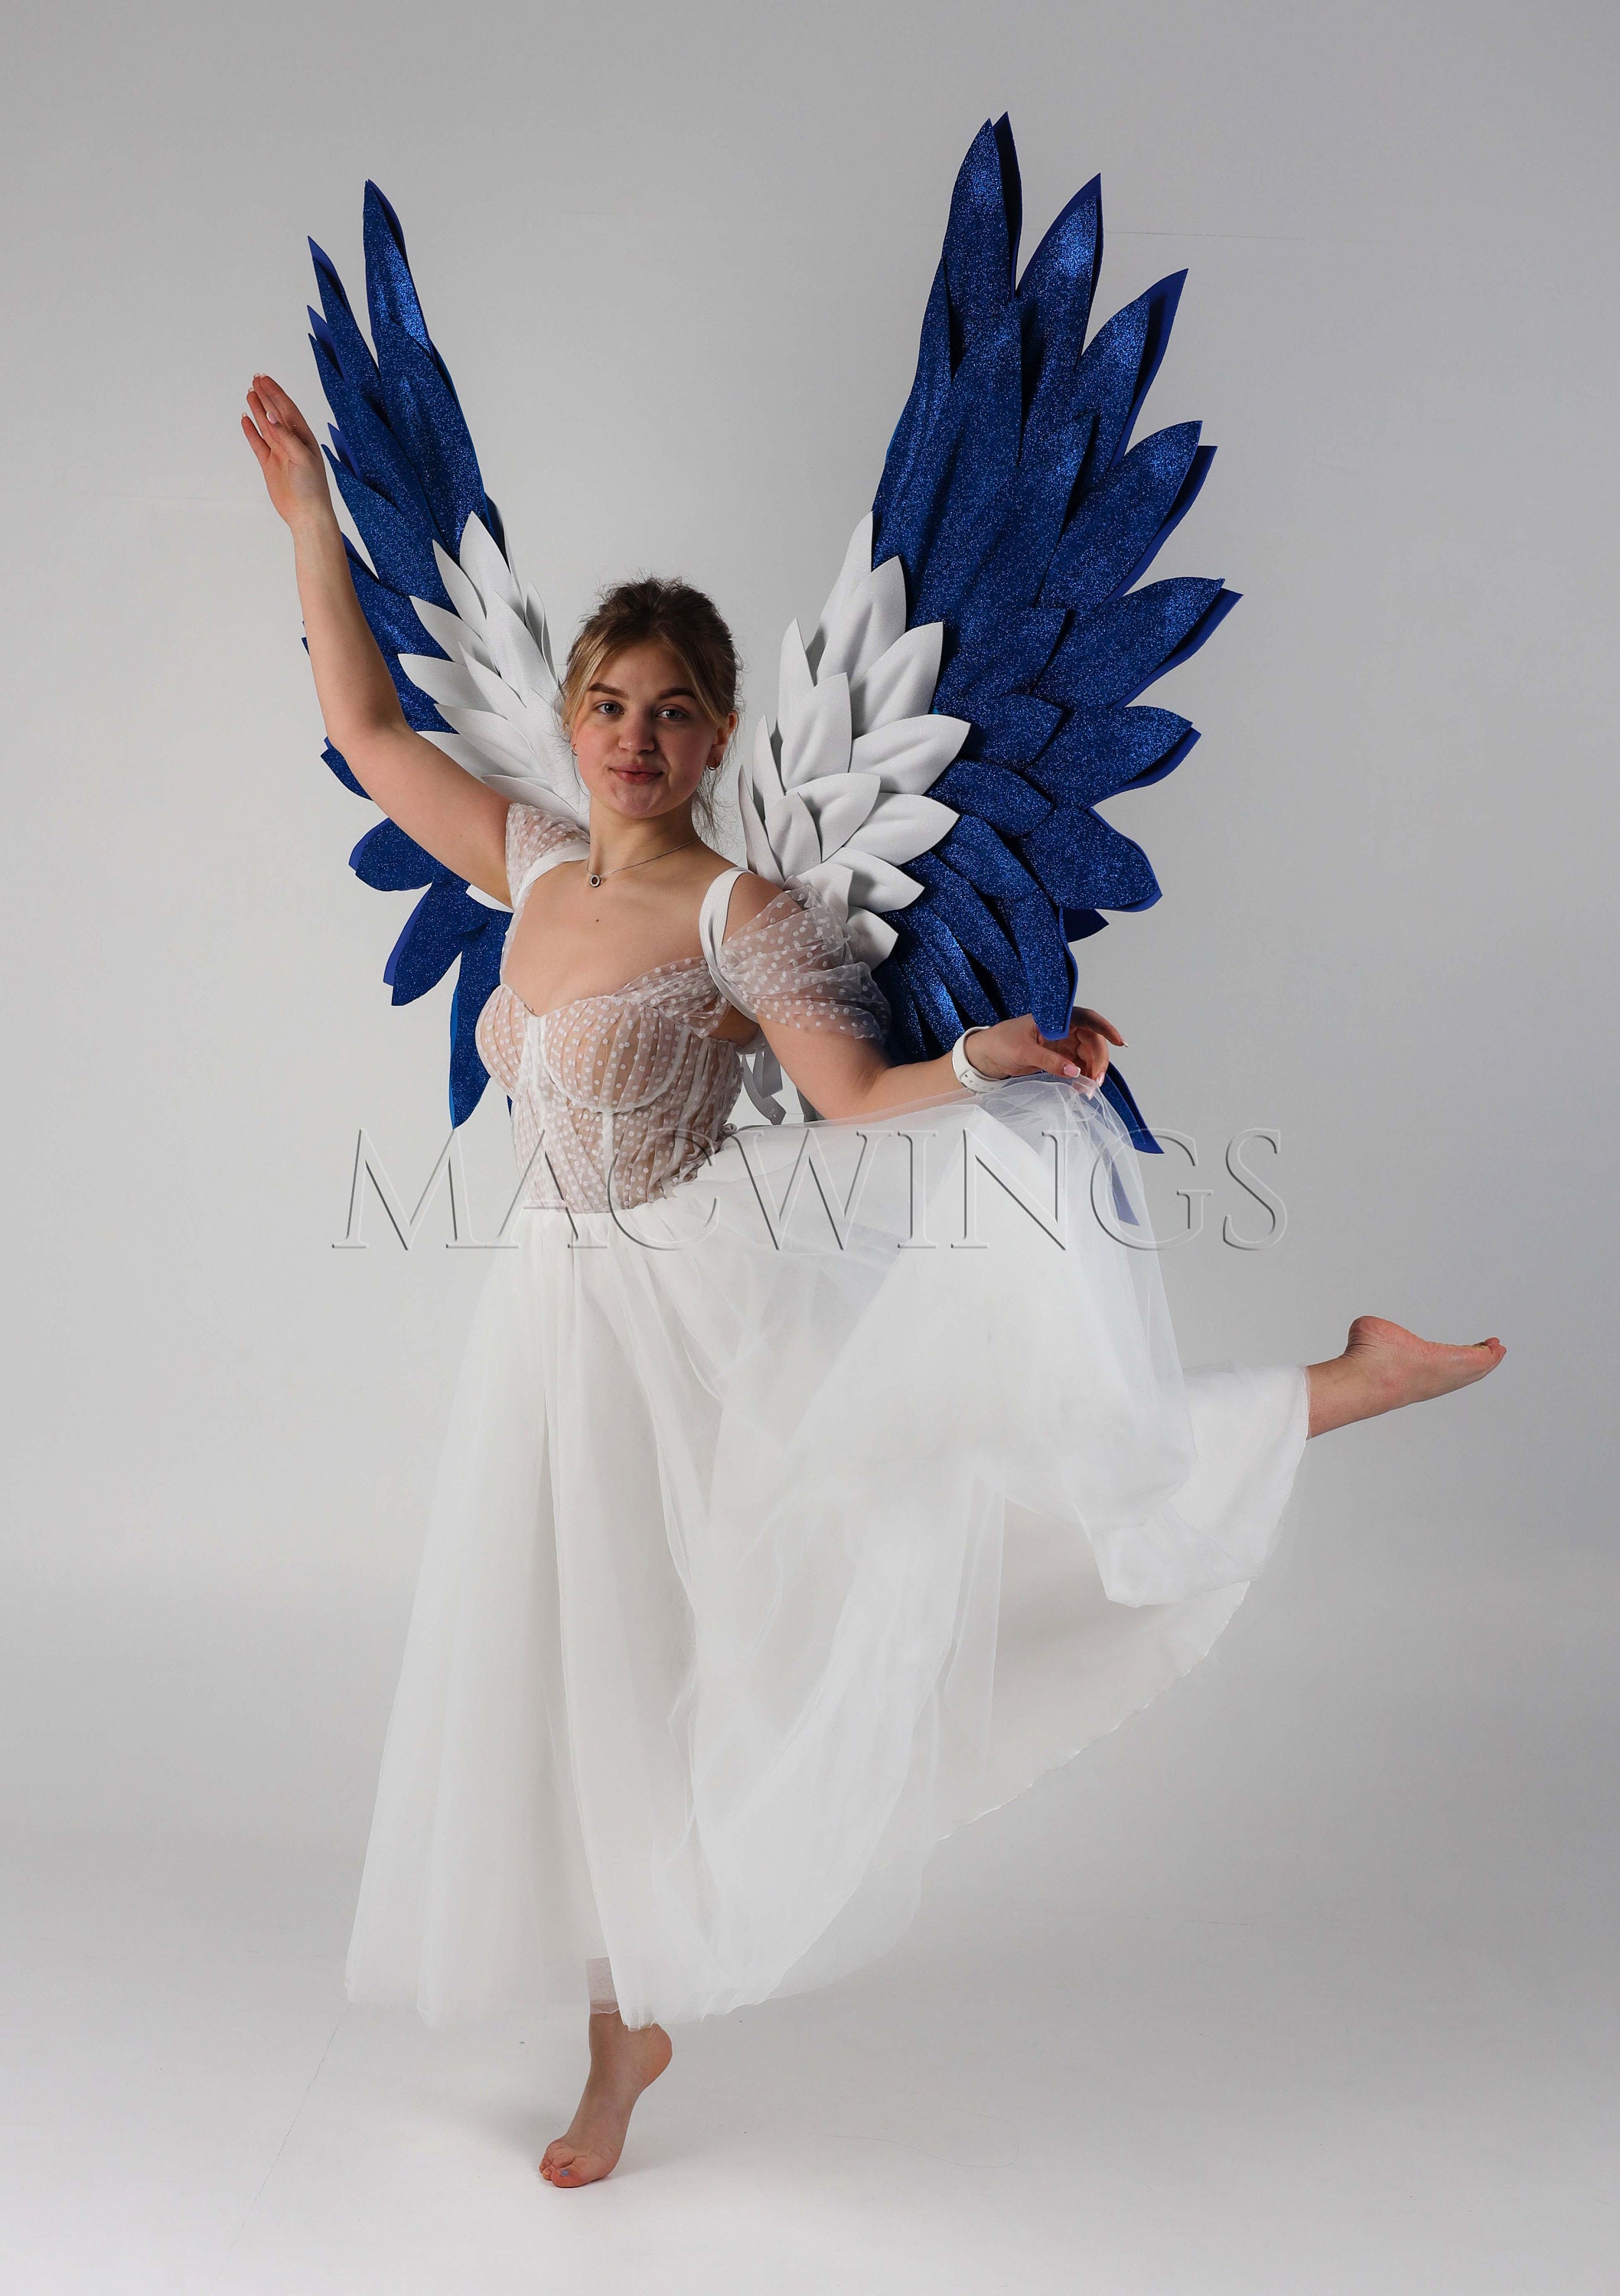 Cos Costume Adulto di grande Blu angelo ali di piume Cosplay fotografia  Gioco Display sfilata di